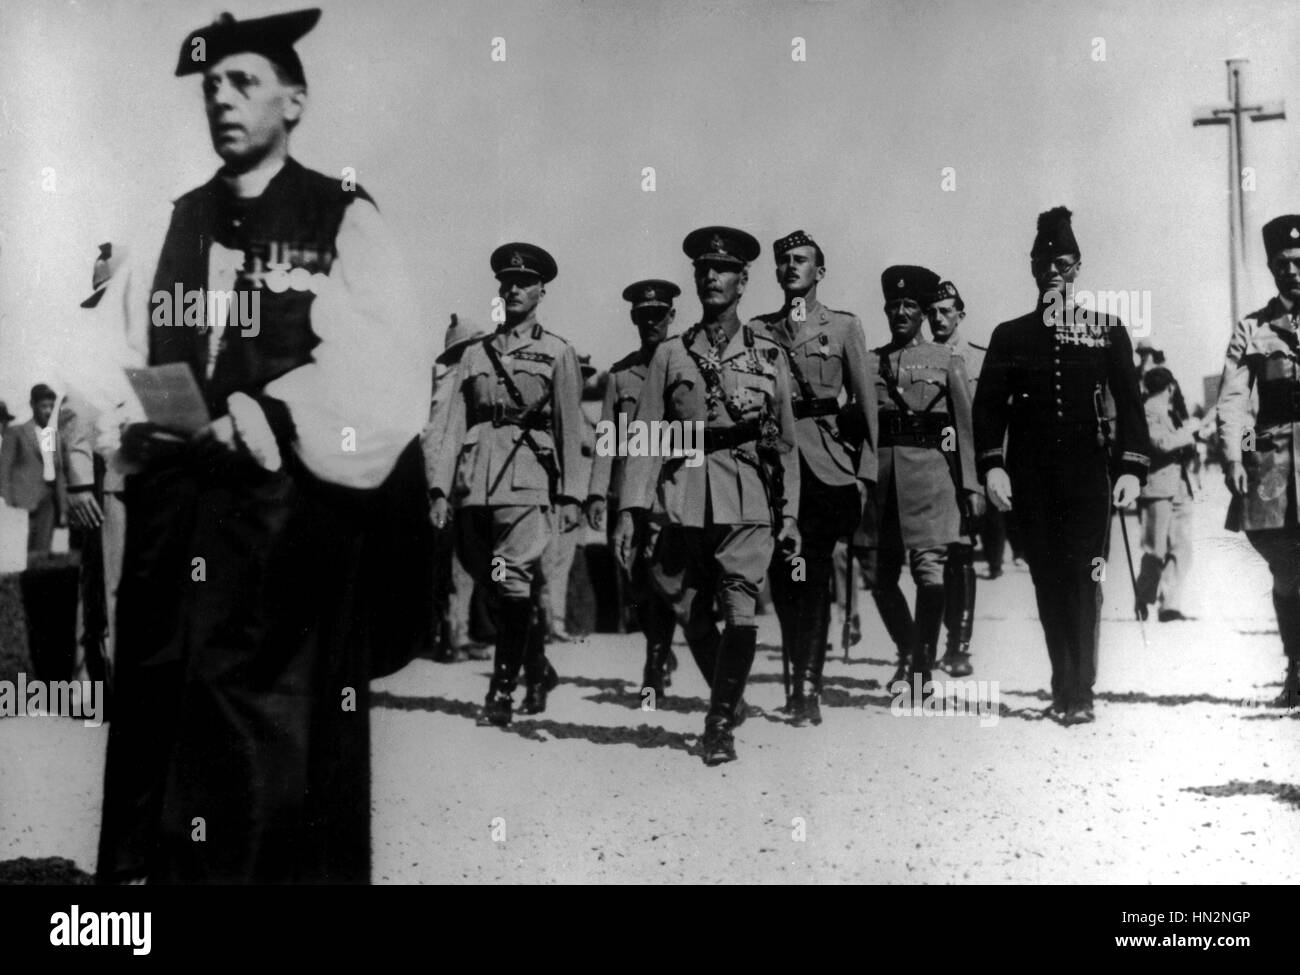 La British Royal Commissione arriva in Palestina: in uniforme; Signore Peel (destra) e Sir Horace Rumbold (sinistra) Novembre 11, 1936 la Palestina, colonizzazione Washington, archivi nazionali Foto Stock